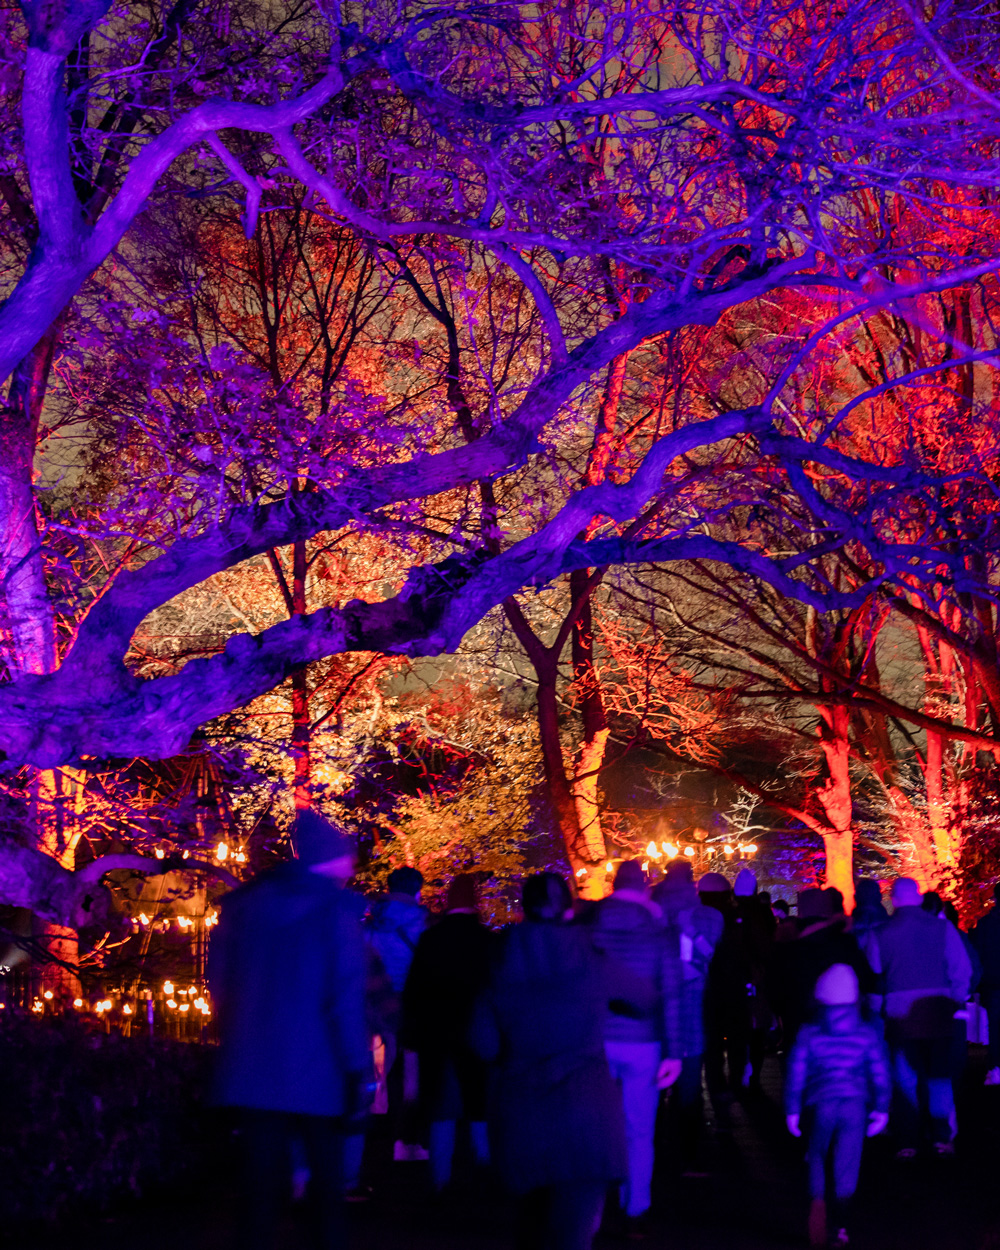 People walking under colorfully illuminated trees.